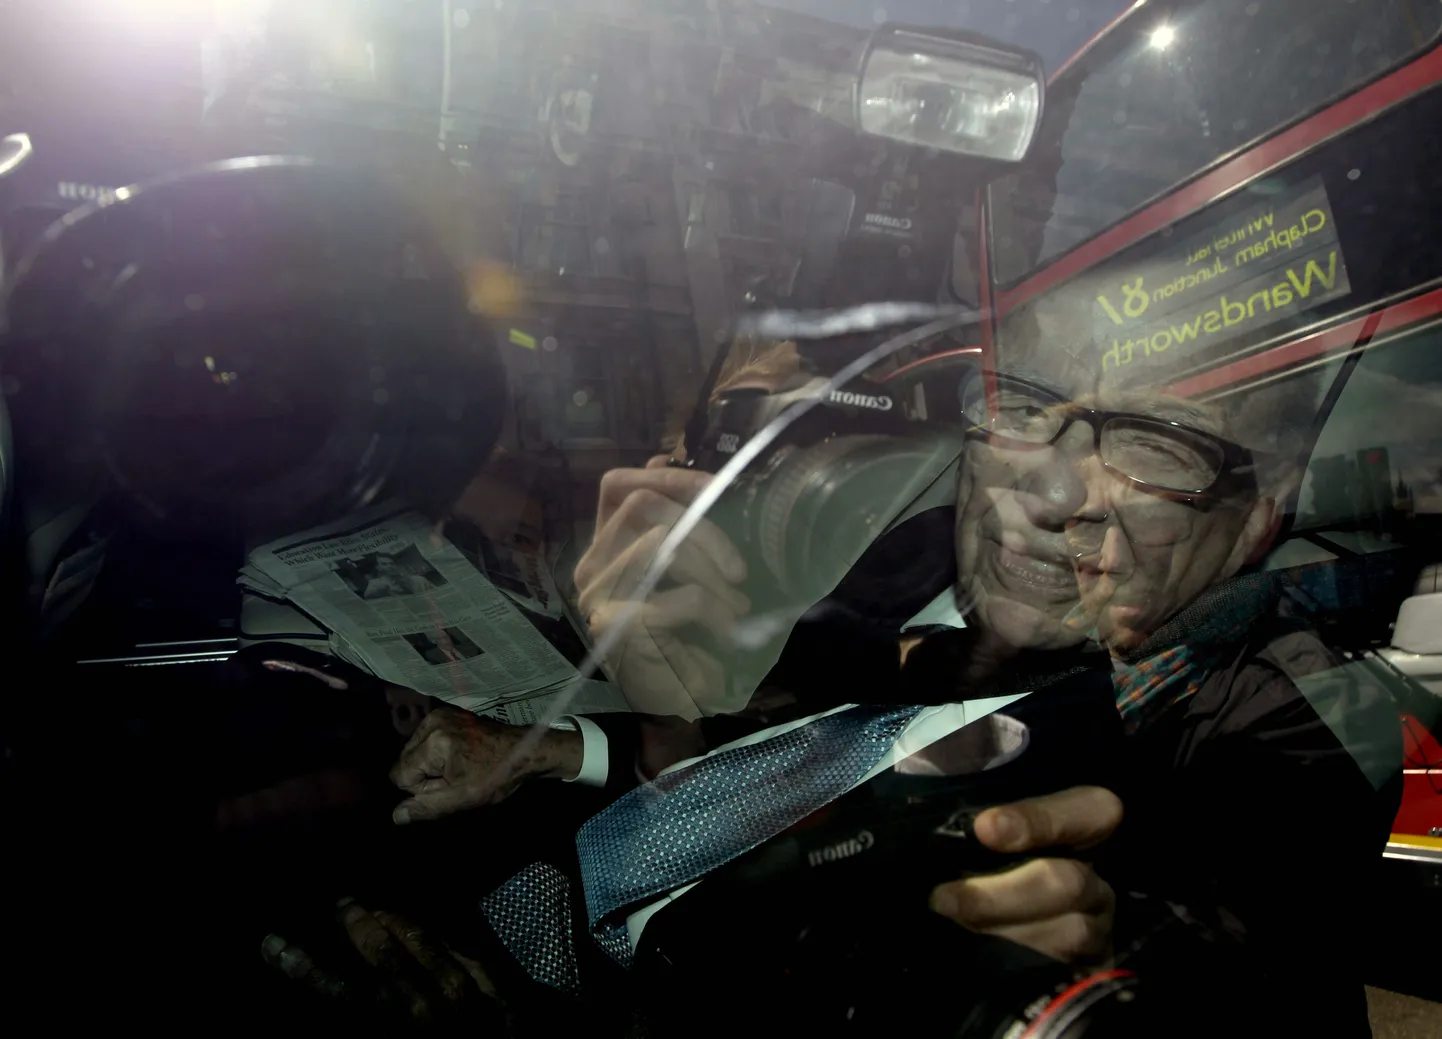 Meediamogul Rupert Murdoch pildistatud täna Londonis autos. Murdoch koos poja  James Murdochd täna astuma Briti parlamendikomitee ette nende küsimustele vastama.